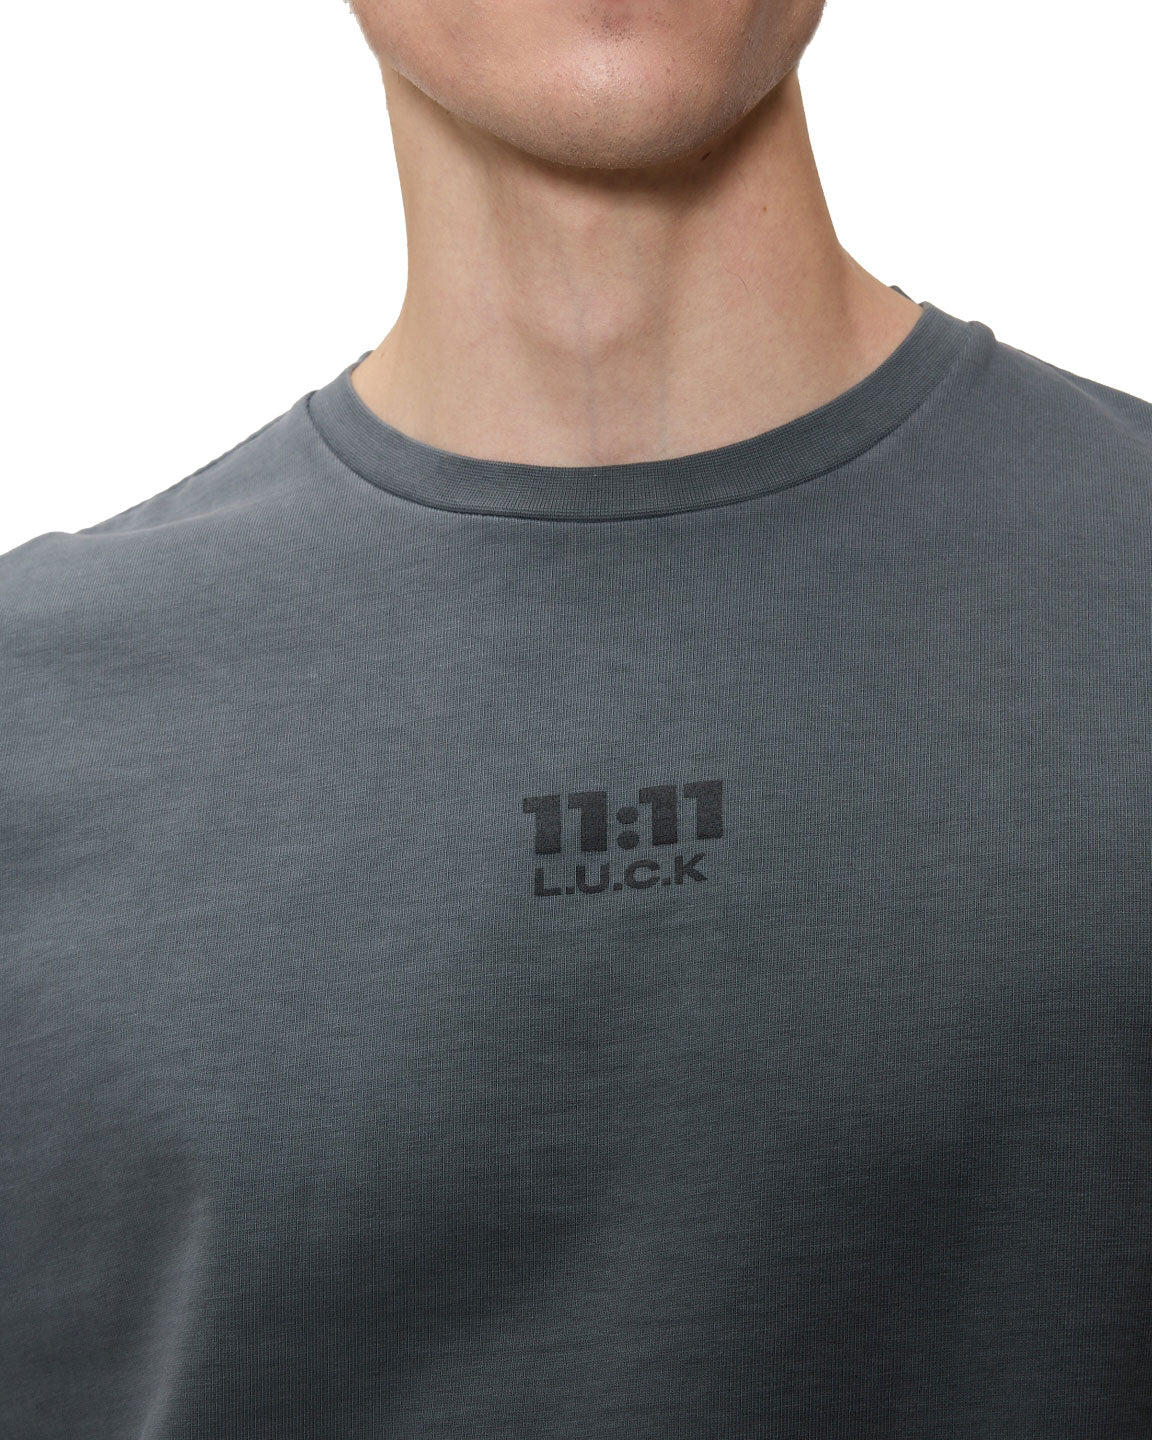 11:11 L.U.C.K logo on a grey unisex t-shirt